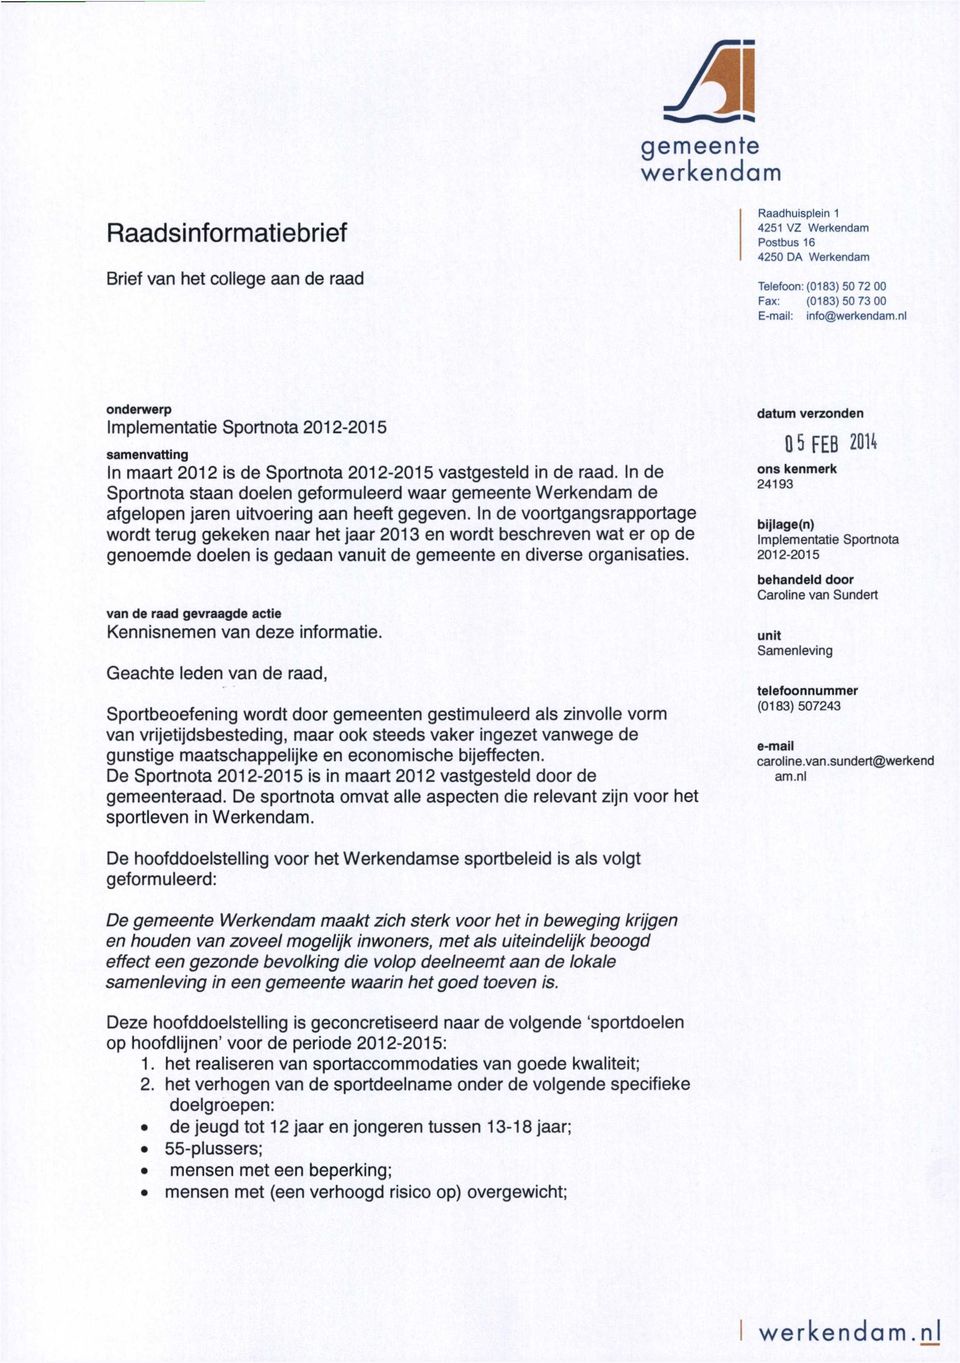 In de Sportnota staan doelen geformuleerd waar gemeente Werkendam de afgelopen jaren uitvoering aan heeft gegeven.